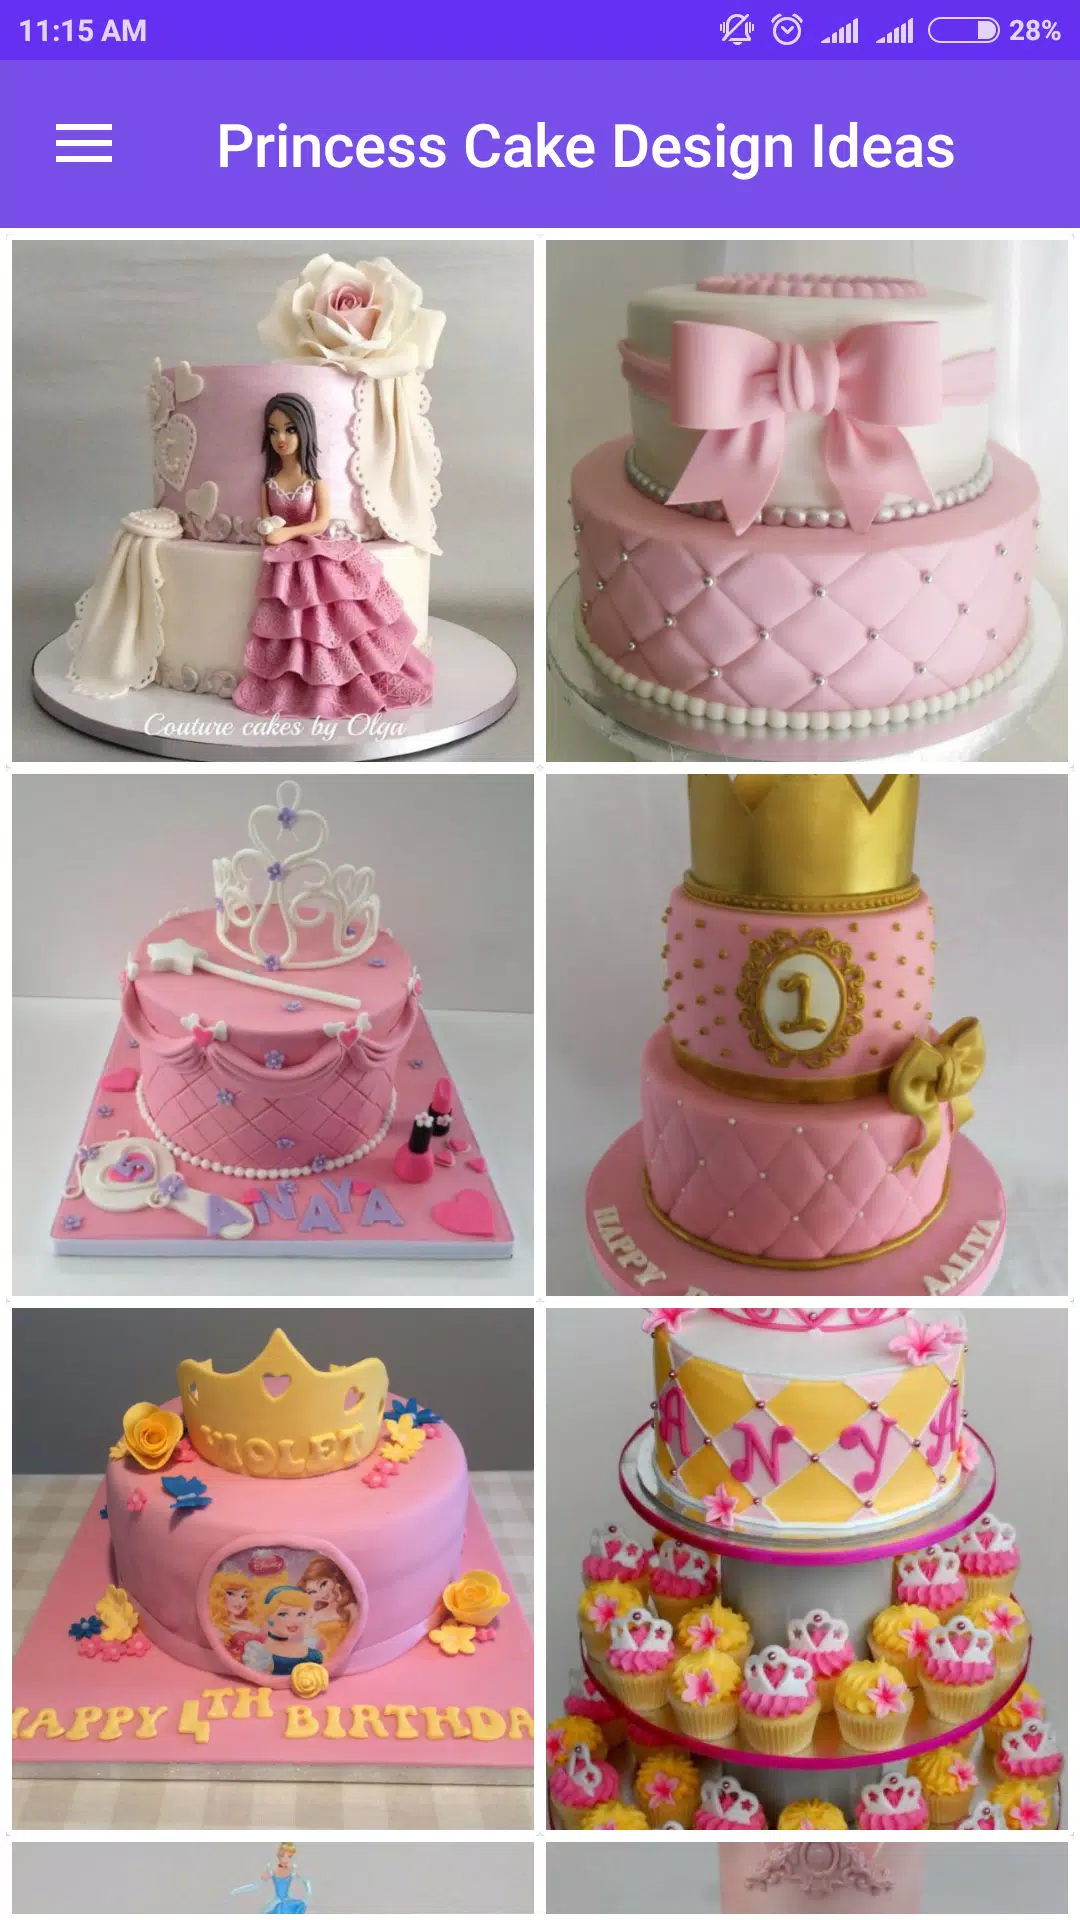 Princess Cake Design Ideas APK pour Android Télécharger